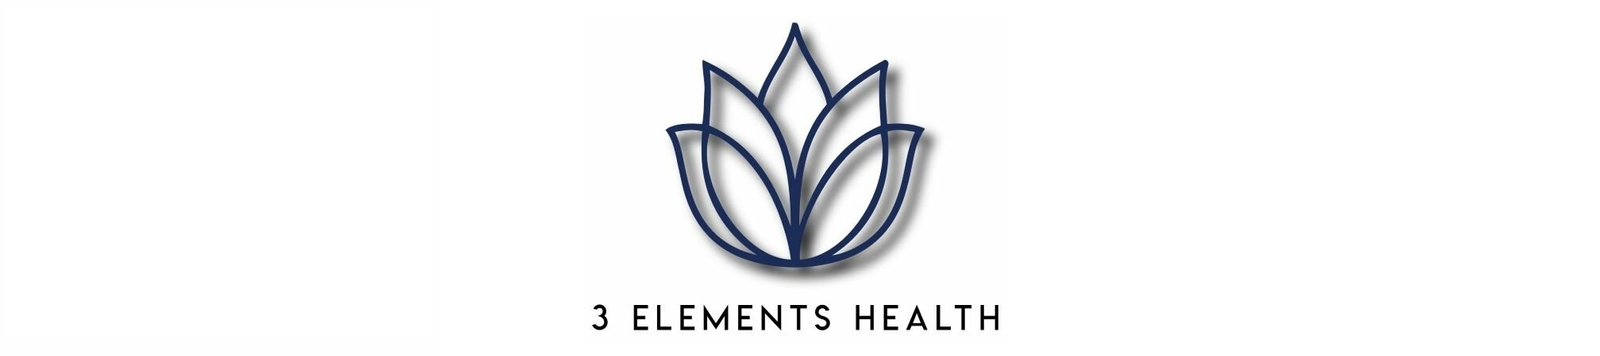 April Butt - 3 Elements Health